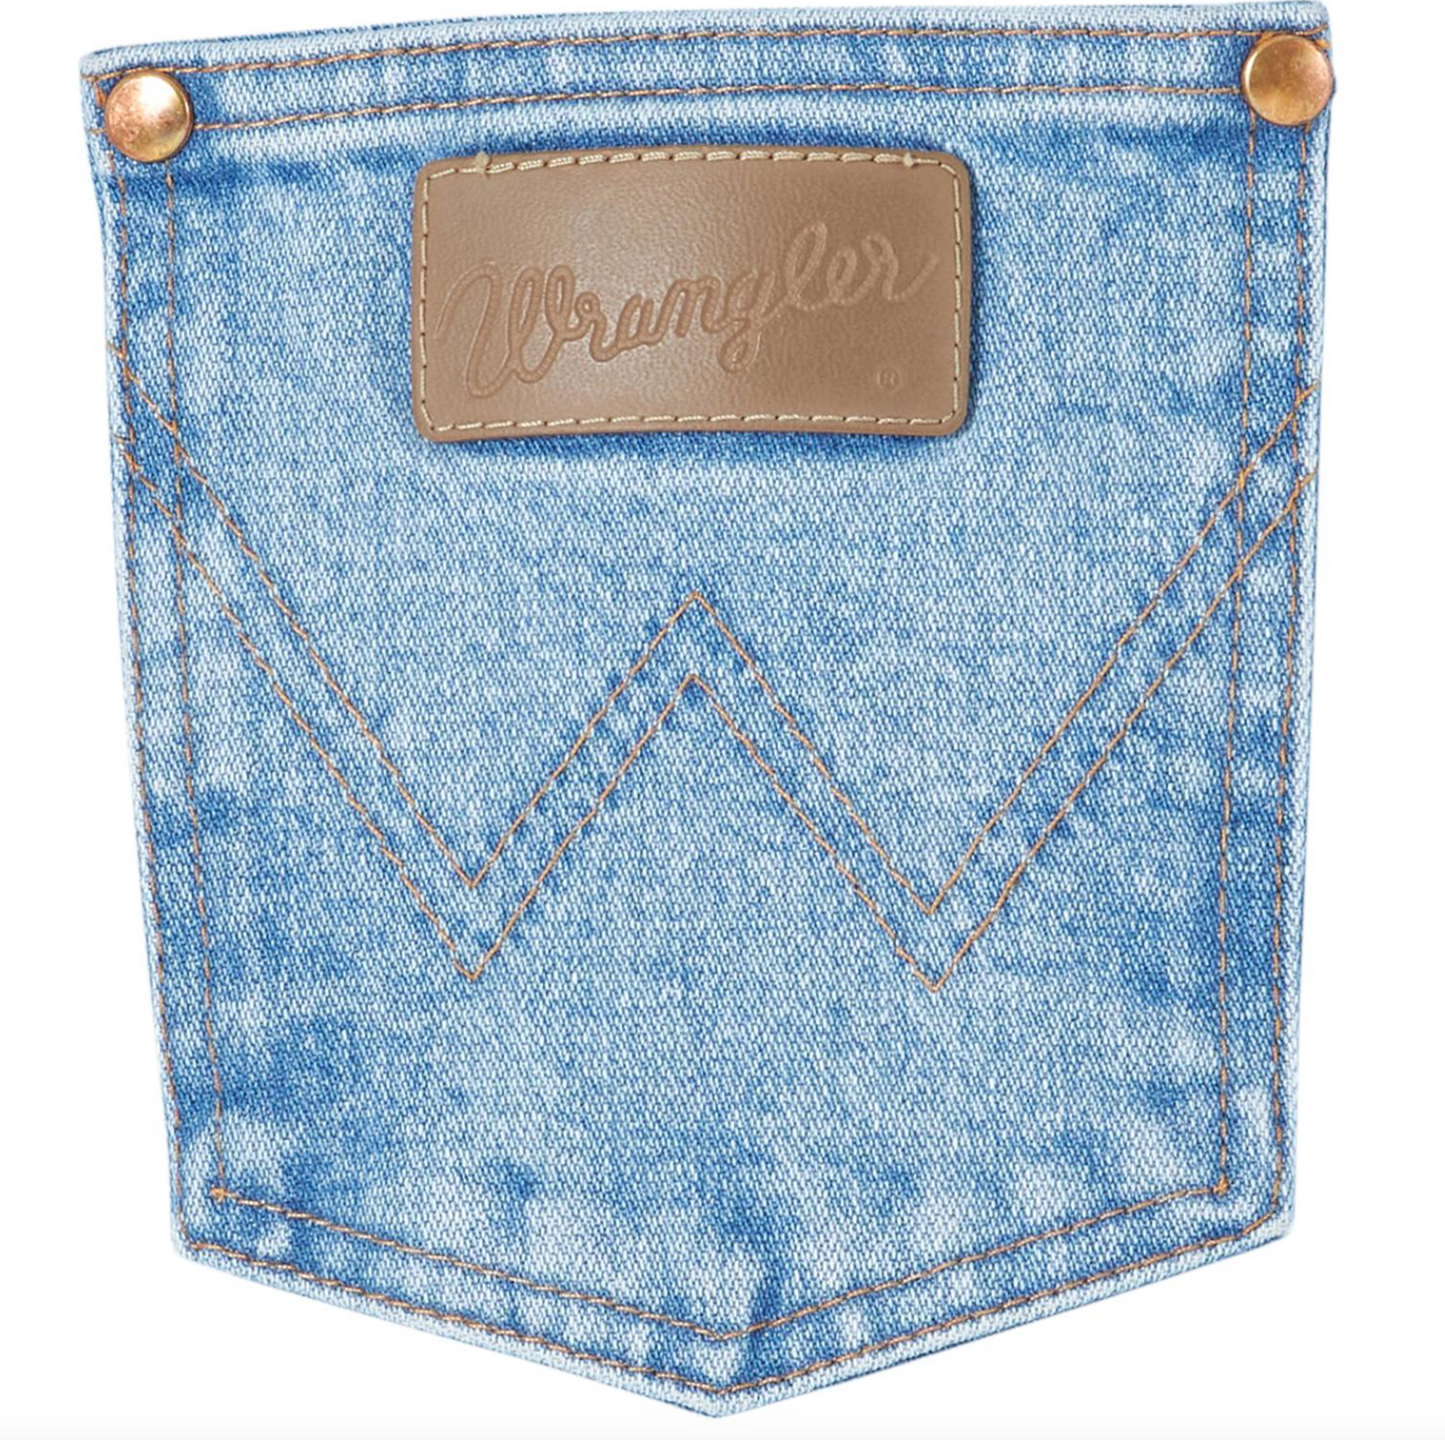 
                  
                    1014MWZAT - Wrangler women's Cowboy Cut jeans - Natural Rise - Antique Wash
                  
                